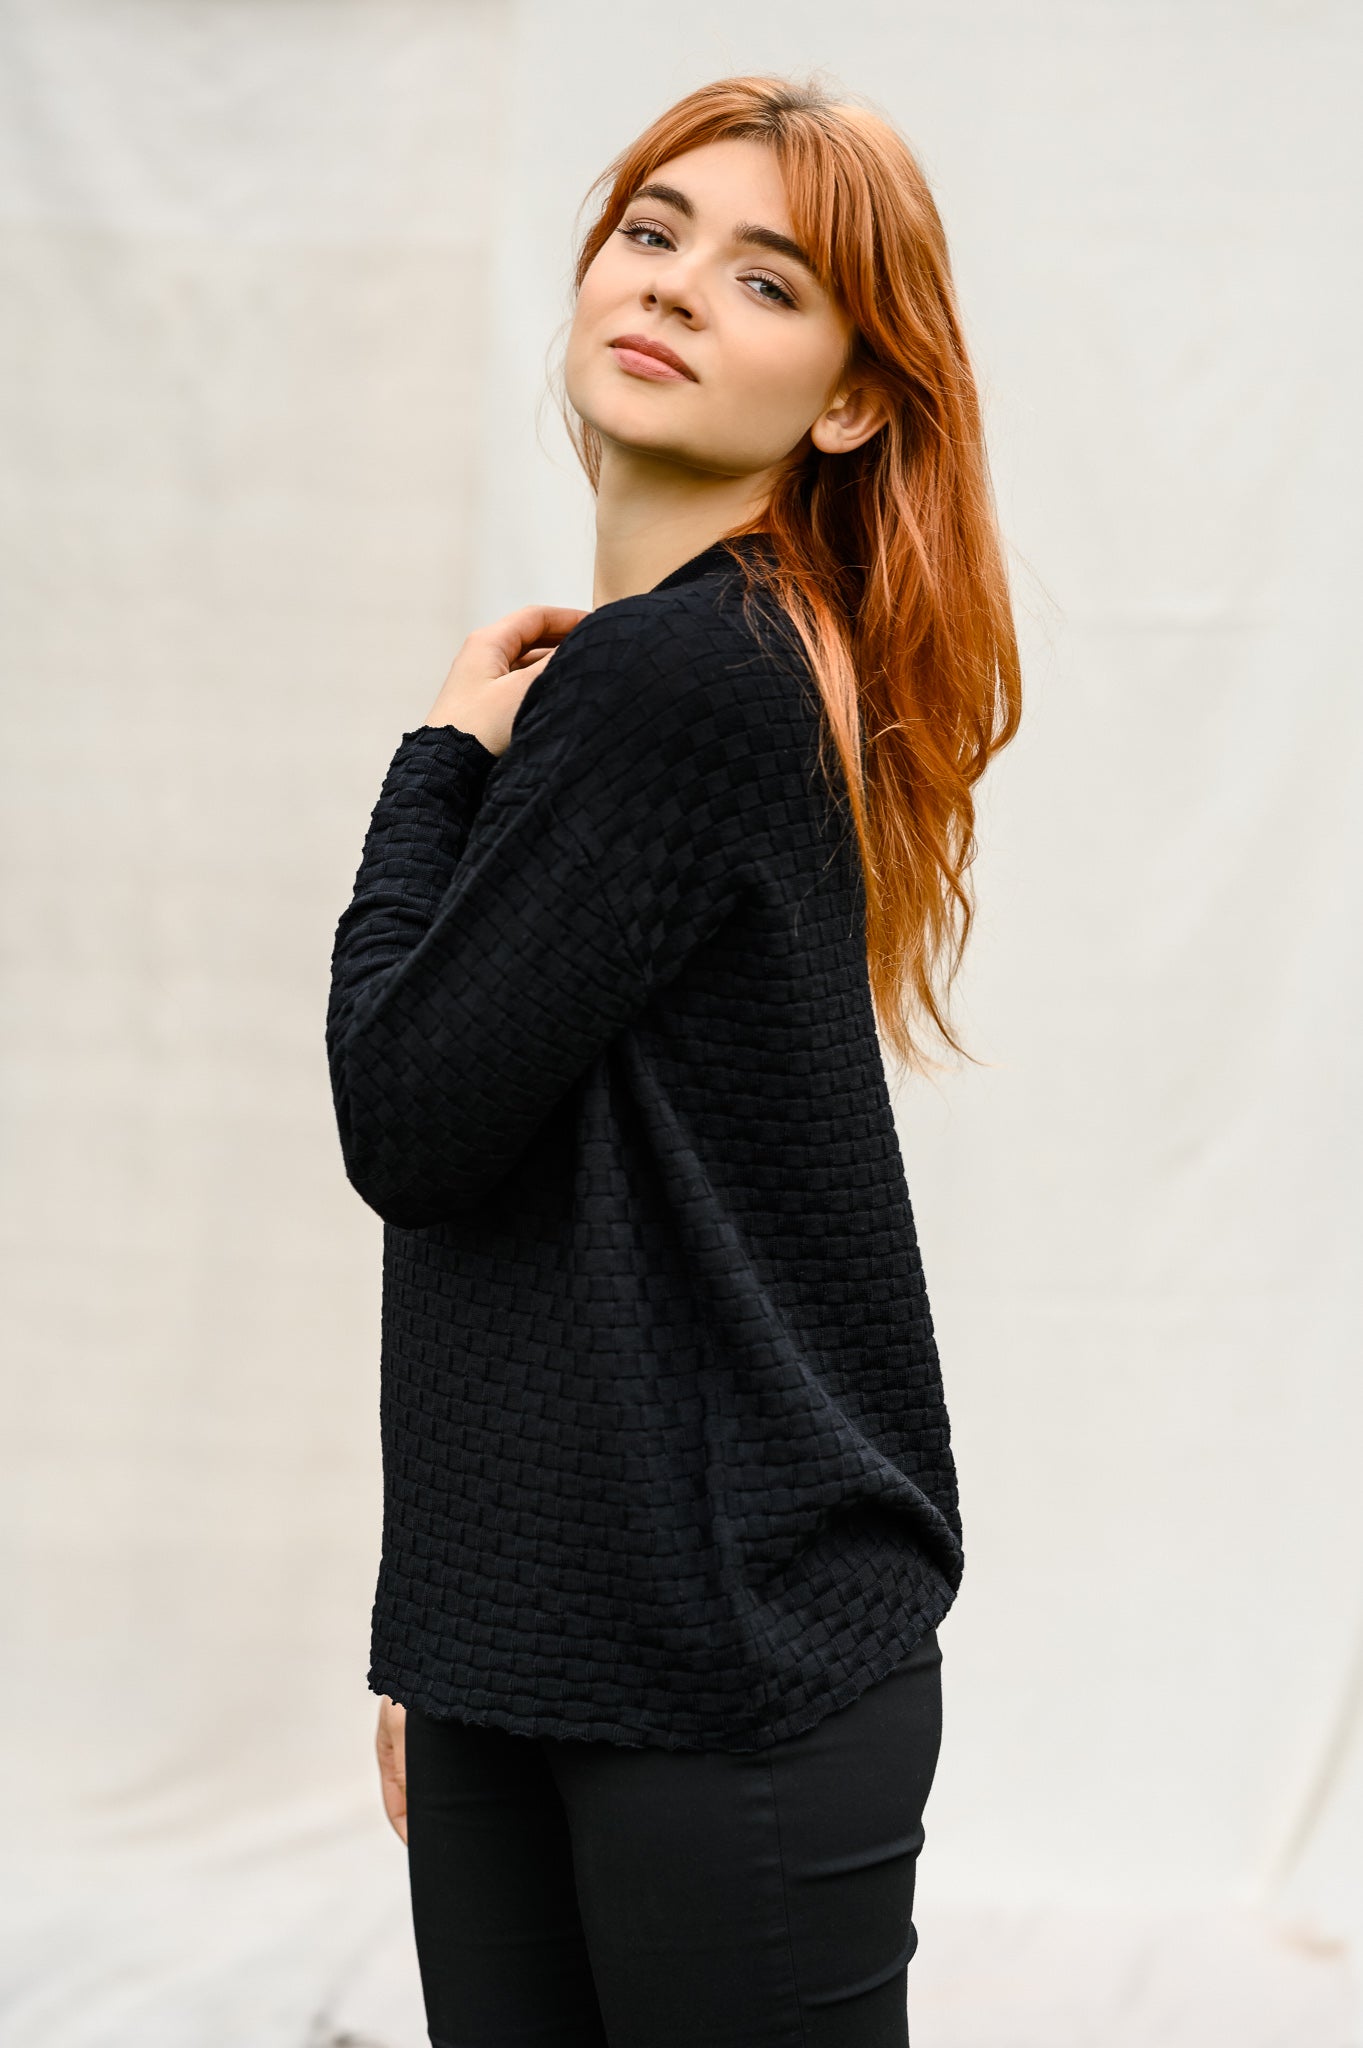 Stylish black oversize sweater